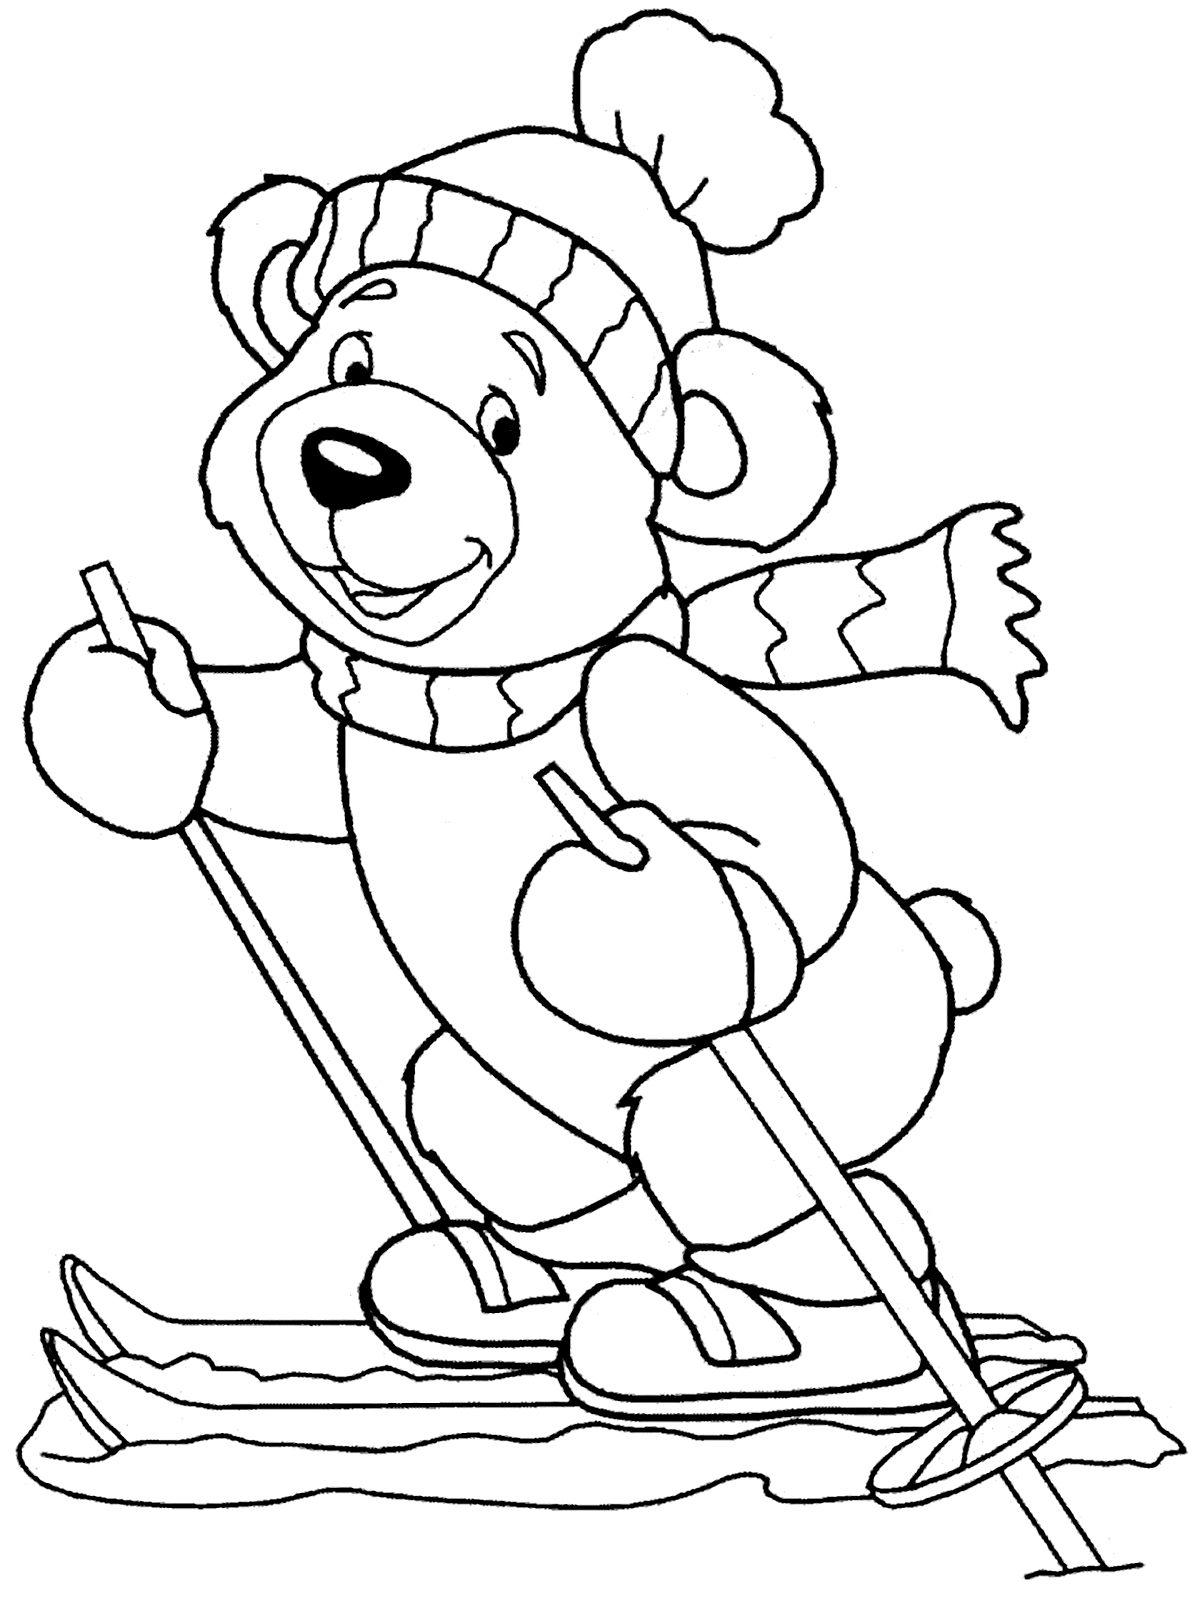 Vá esquiar com este ursinho fofo!